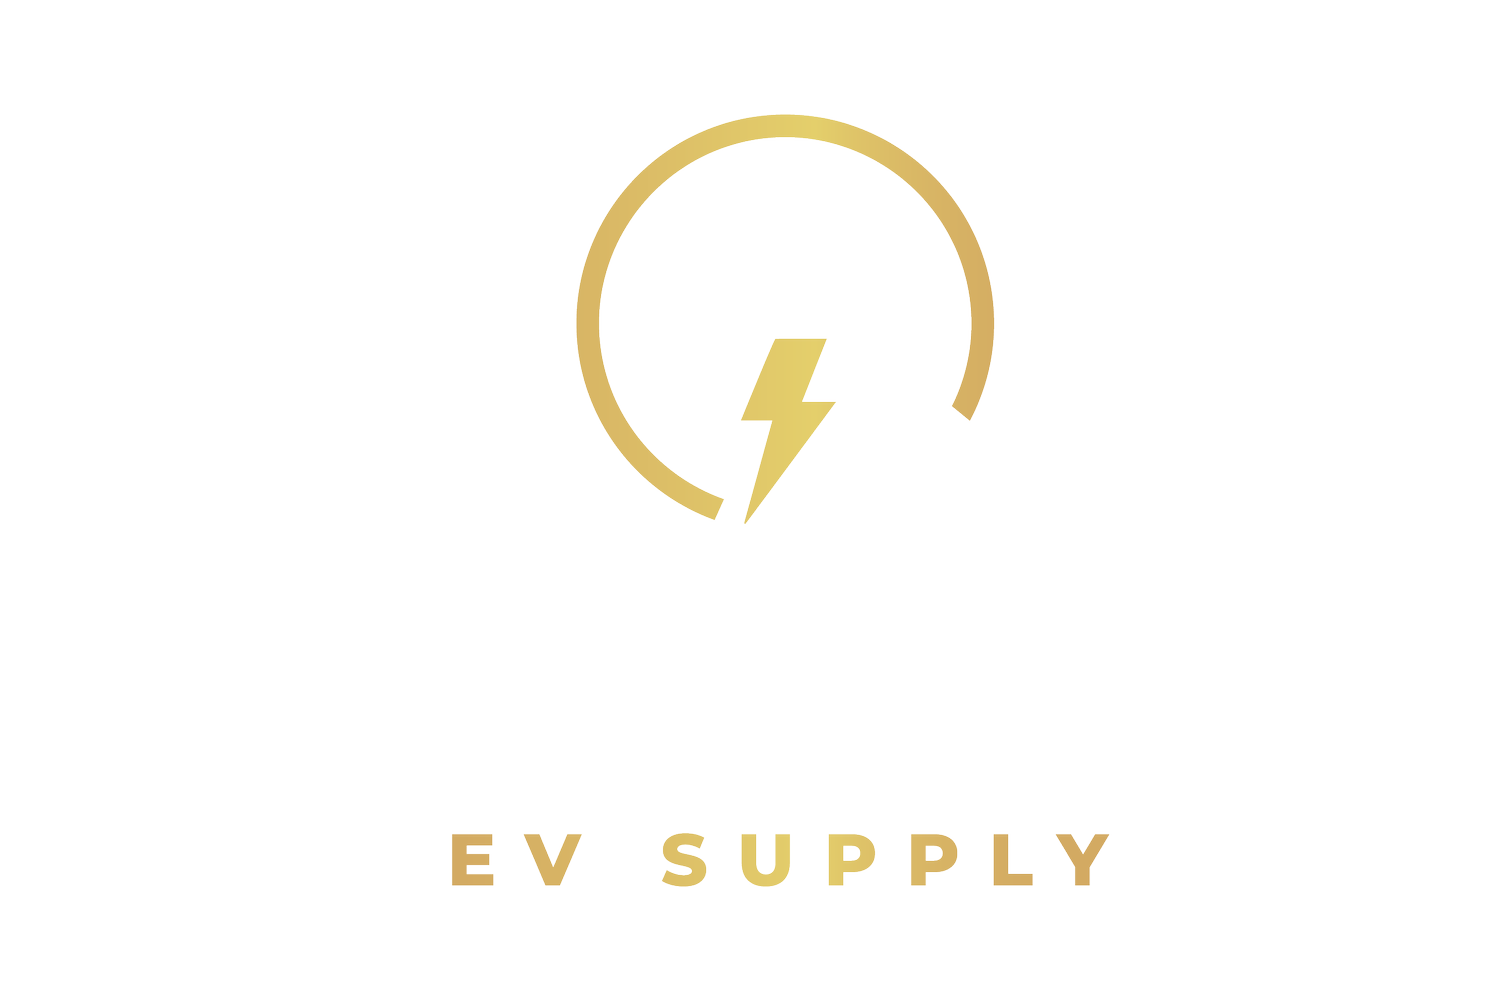 Current EV Supply